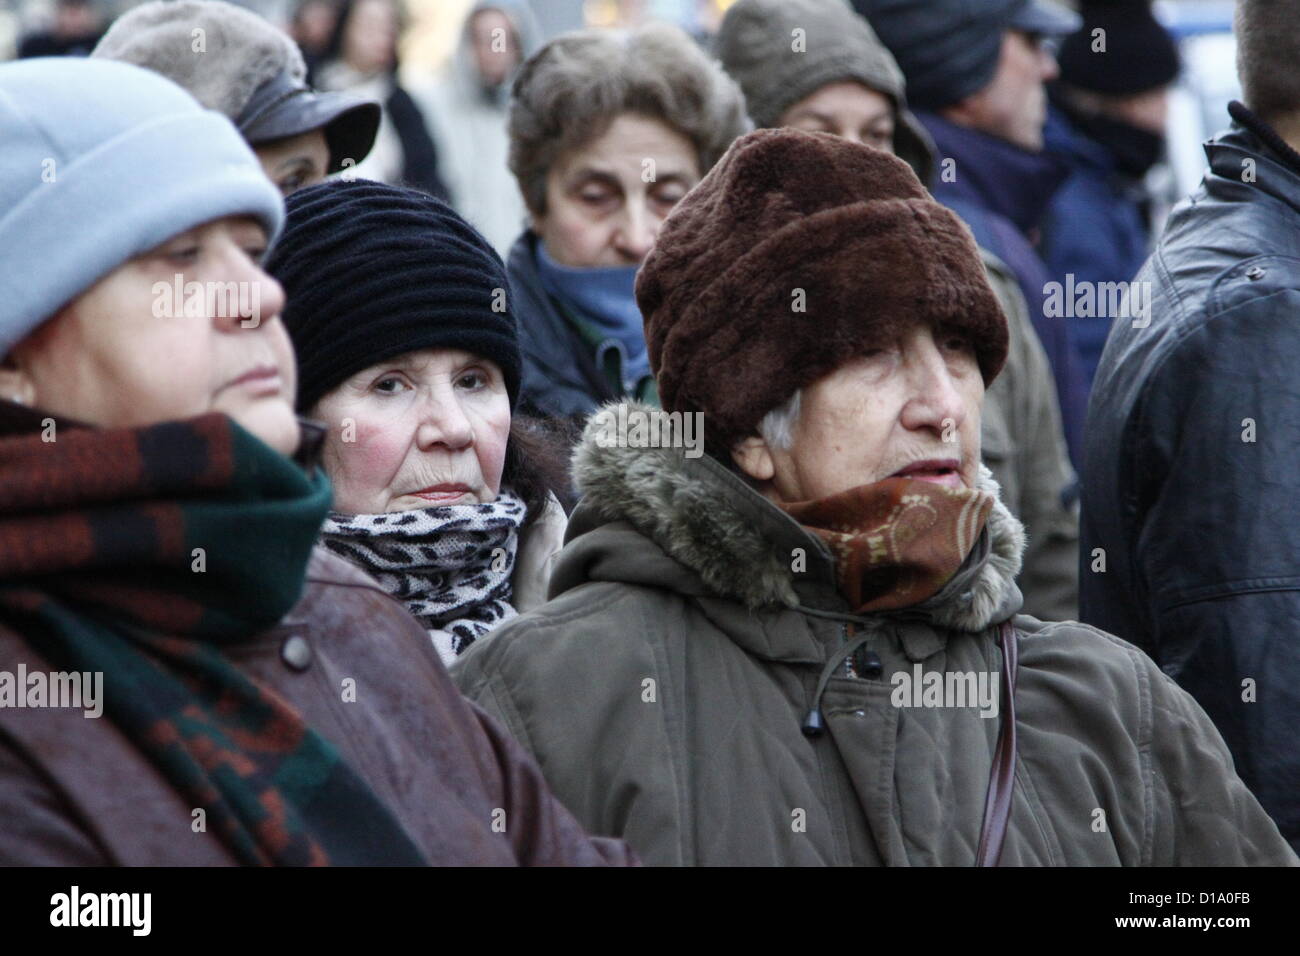 Sofia, Bulgarien; 12. Dezember 2012. Ältere Frauen in der Menge "Tomaten-Revolution" Unterstützer, Protest gegen die weit verbreitete Korruption und die politische Einflussnahme auf die bulgarische Justiz. Stockfoto